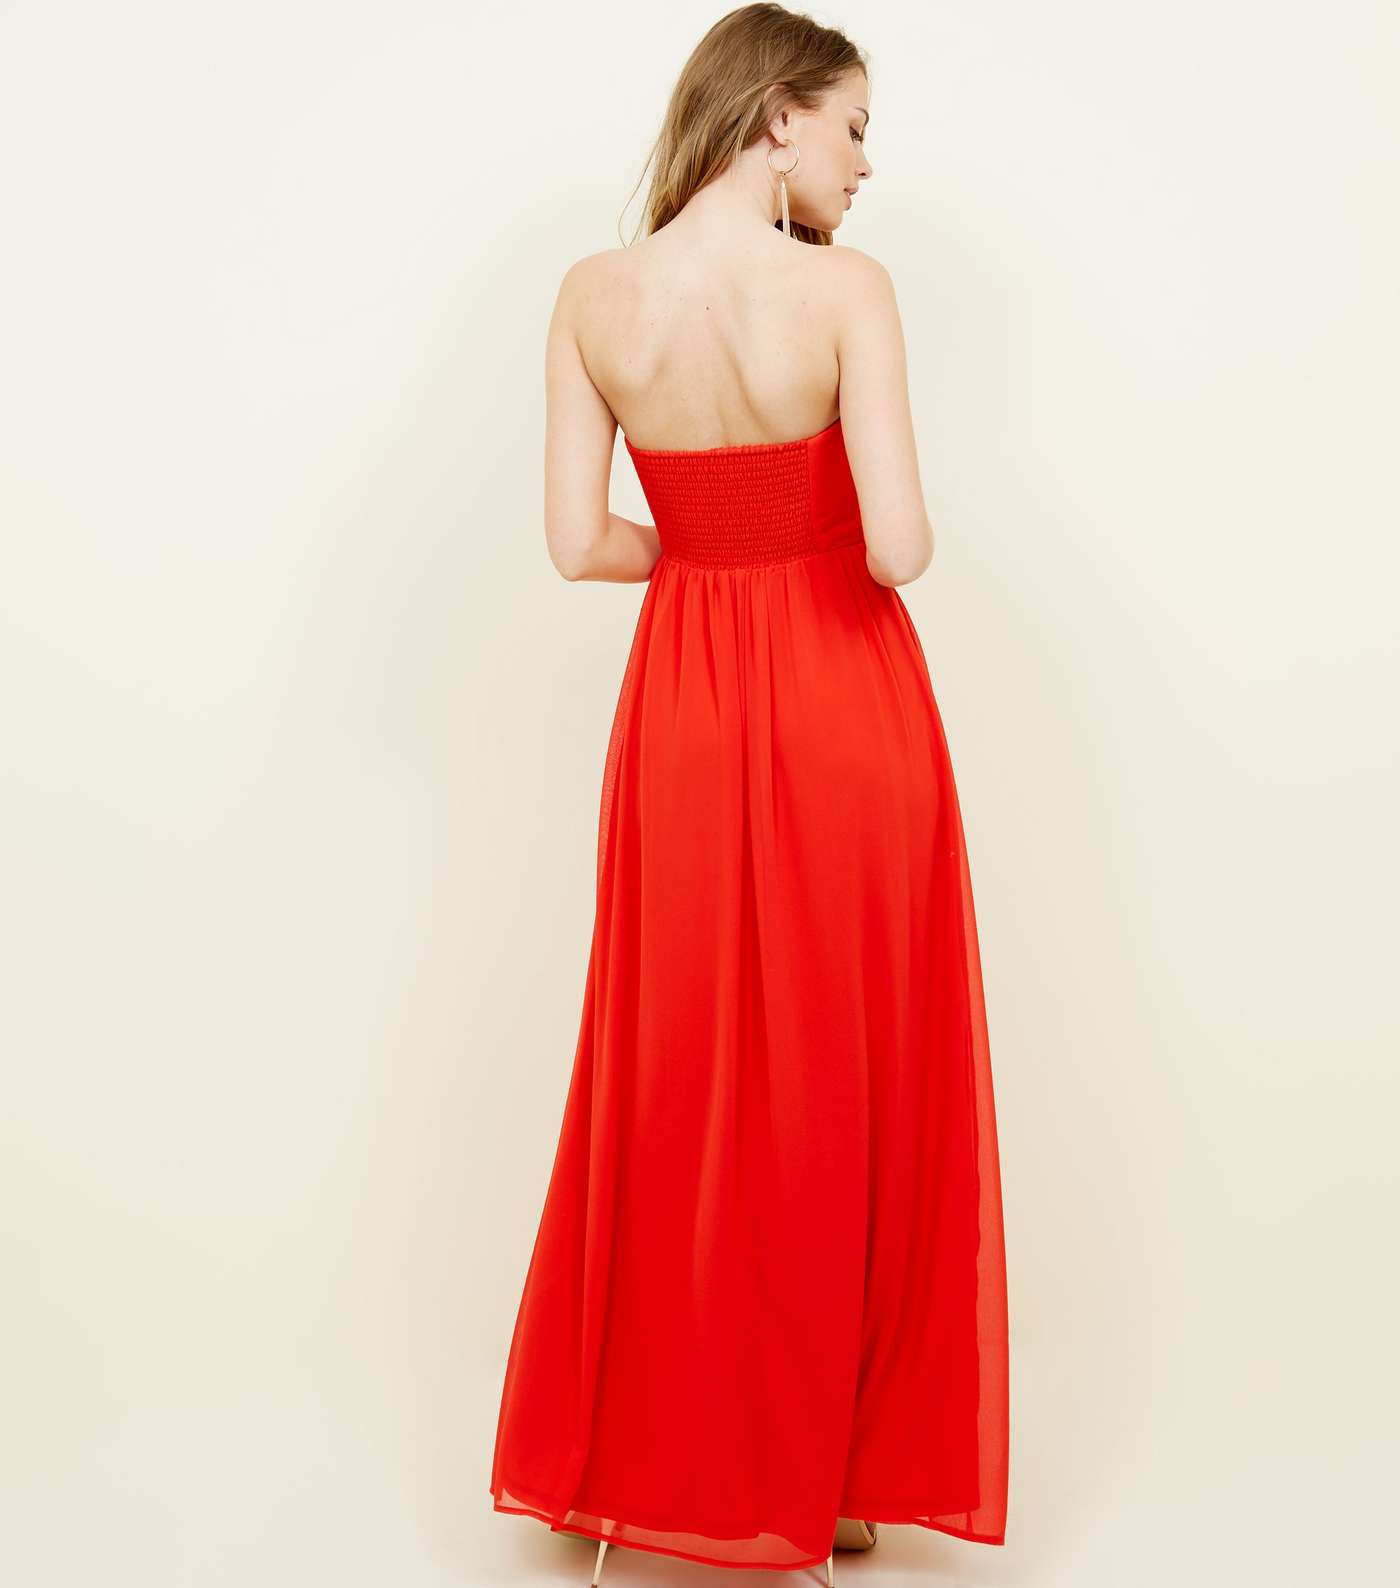 Red Chiffon Strapless Maxi Dress Image 2